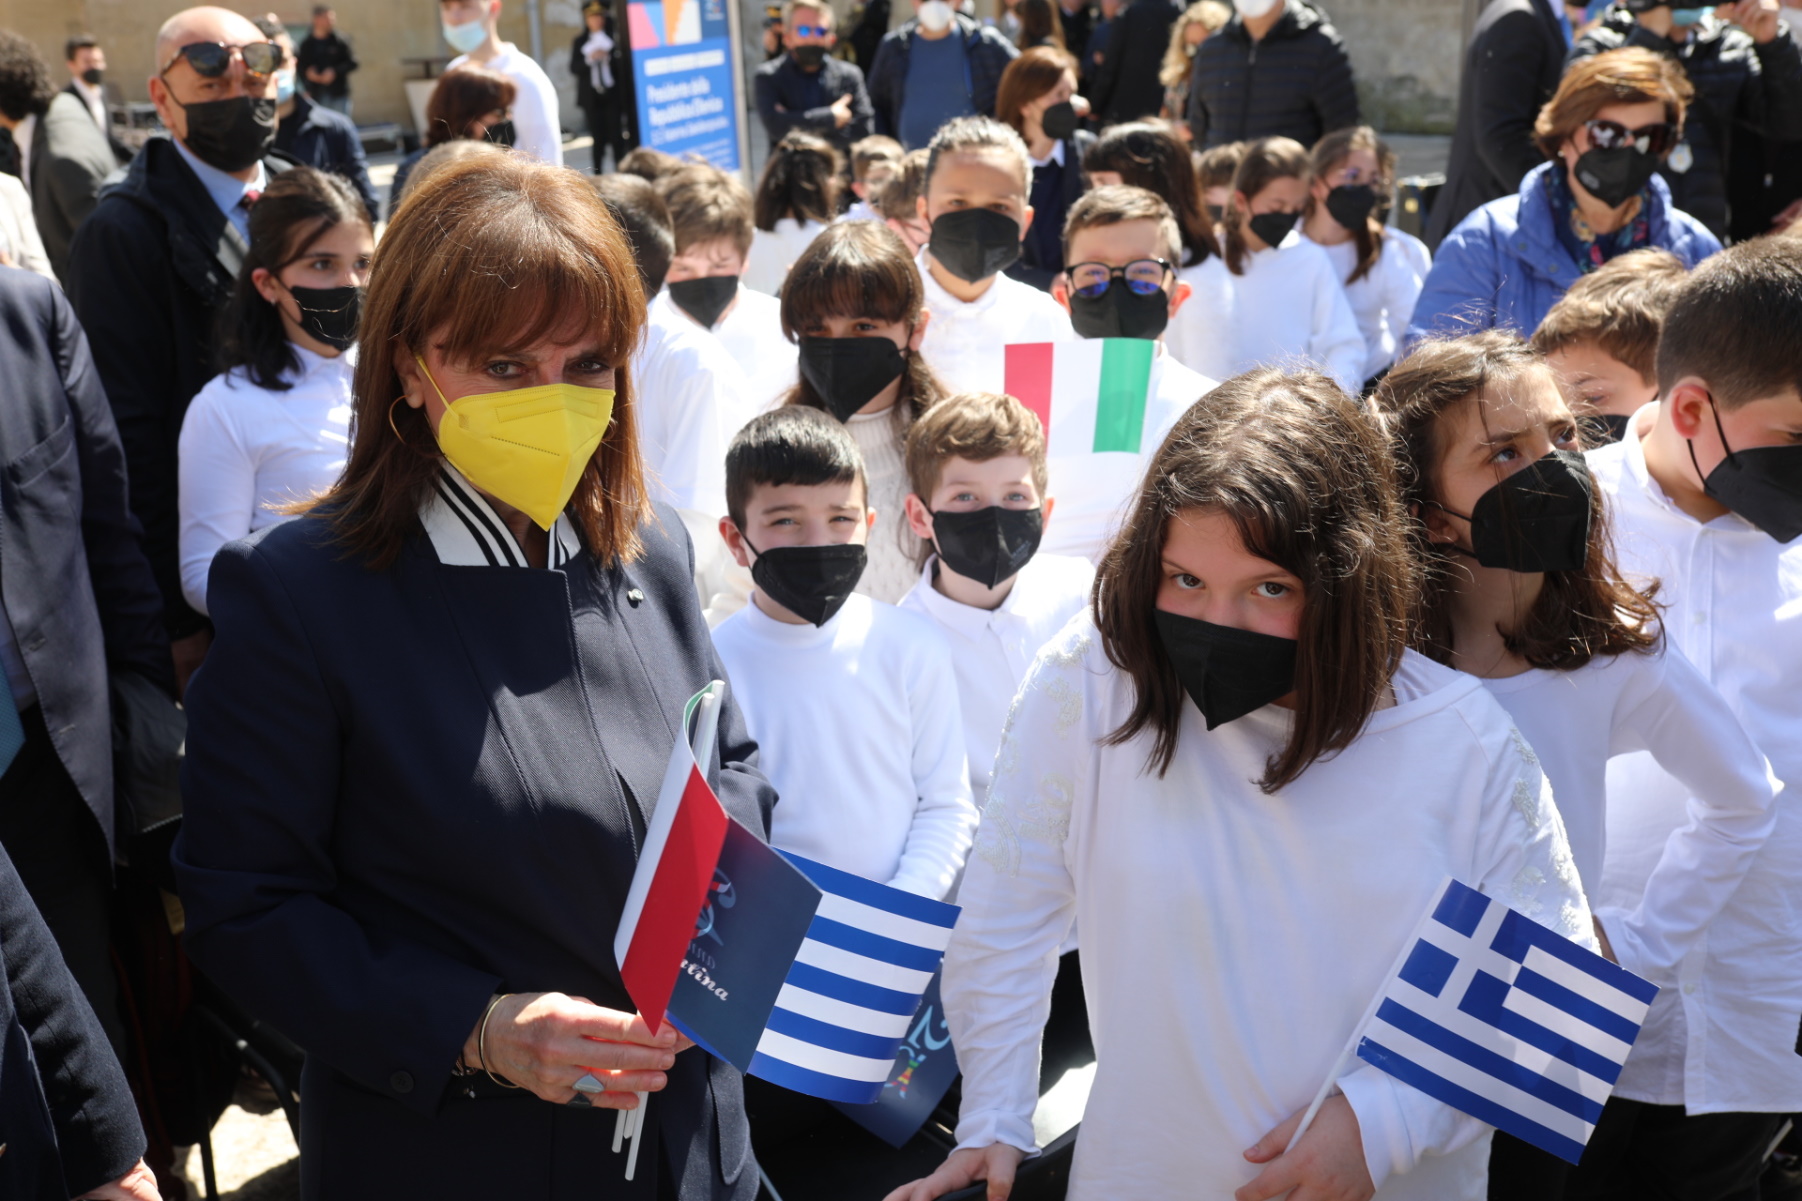 Η Κατερίνα Σακελλαροπούλου στην Κάτω Ιταλία: Ελληνικές σημαίες και τραγούδια στη γκρεκάνικη γλώσσα